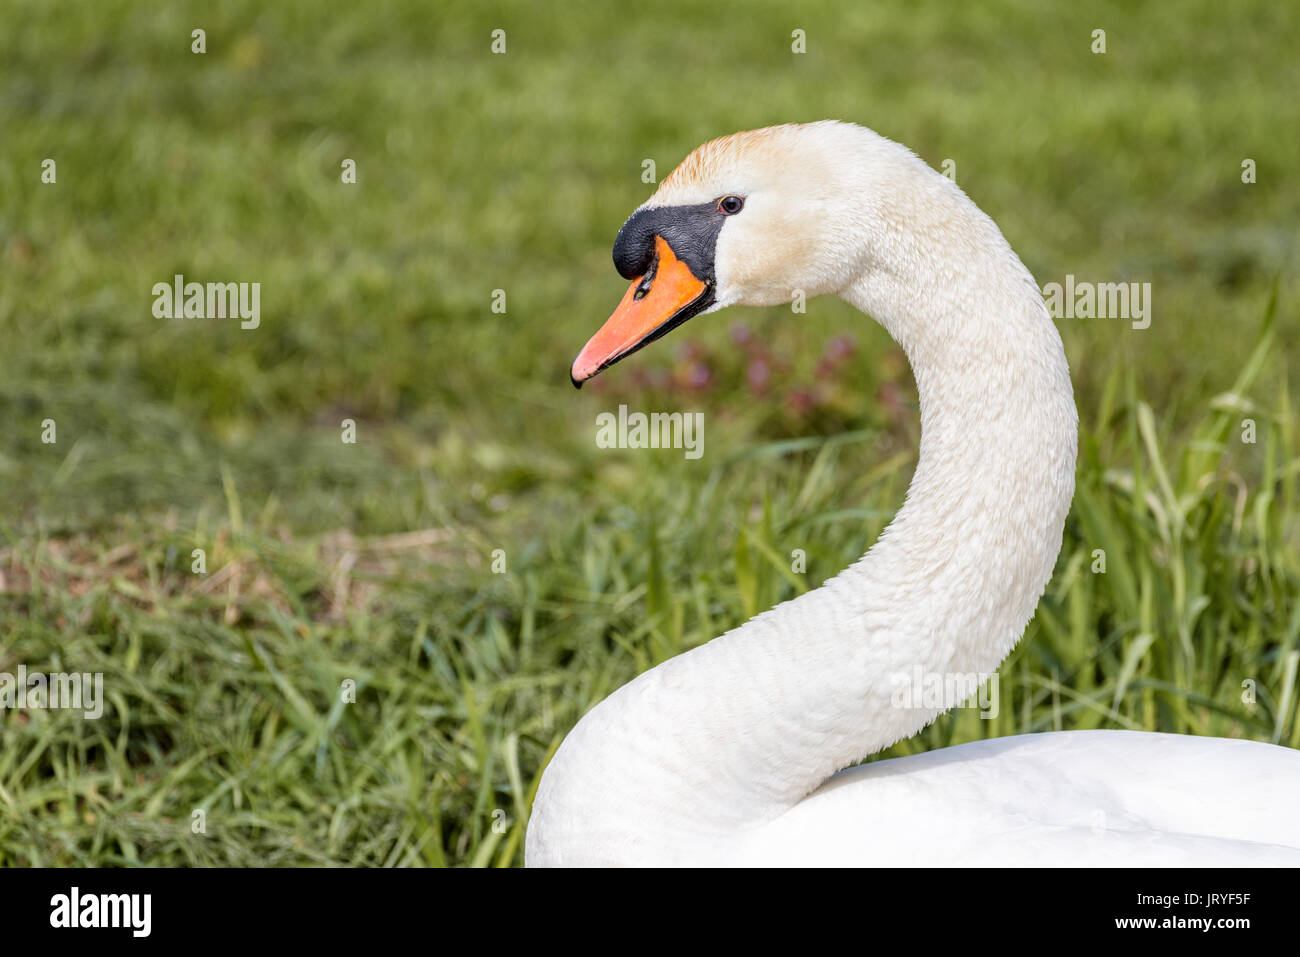 En profil retrato de un cisne aislado sobre un fondo de hierba verde. El cisne es atento y observando. Foto de stock